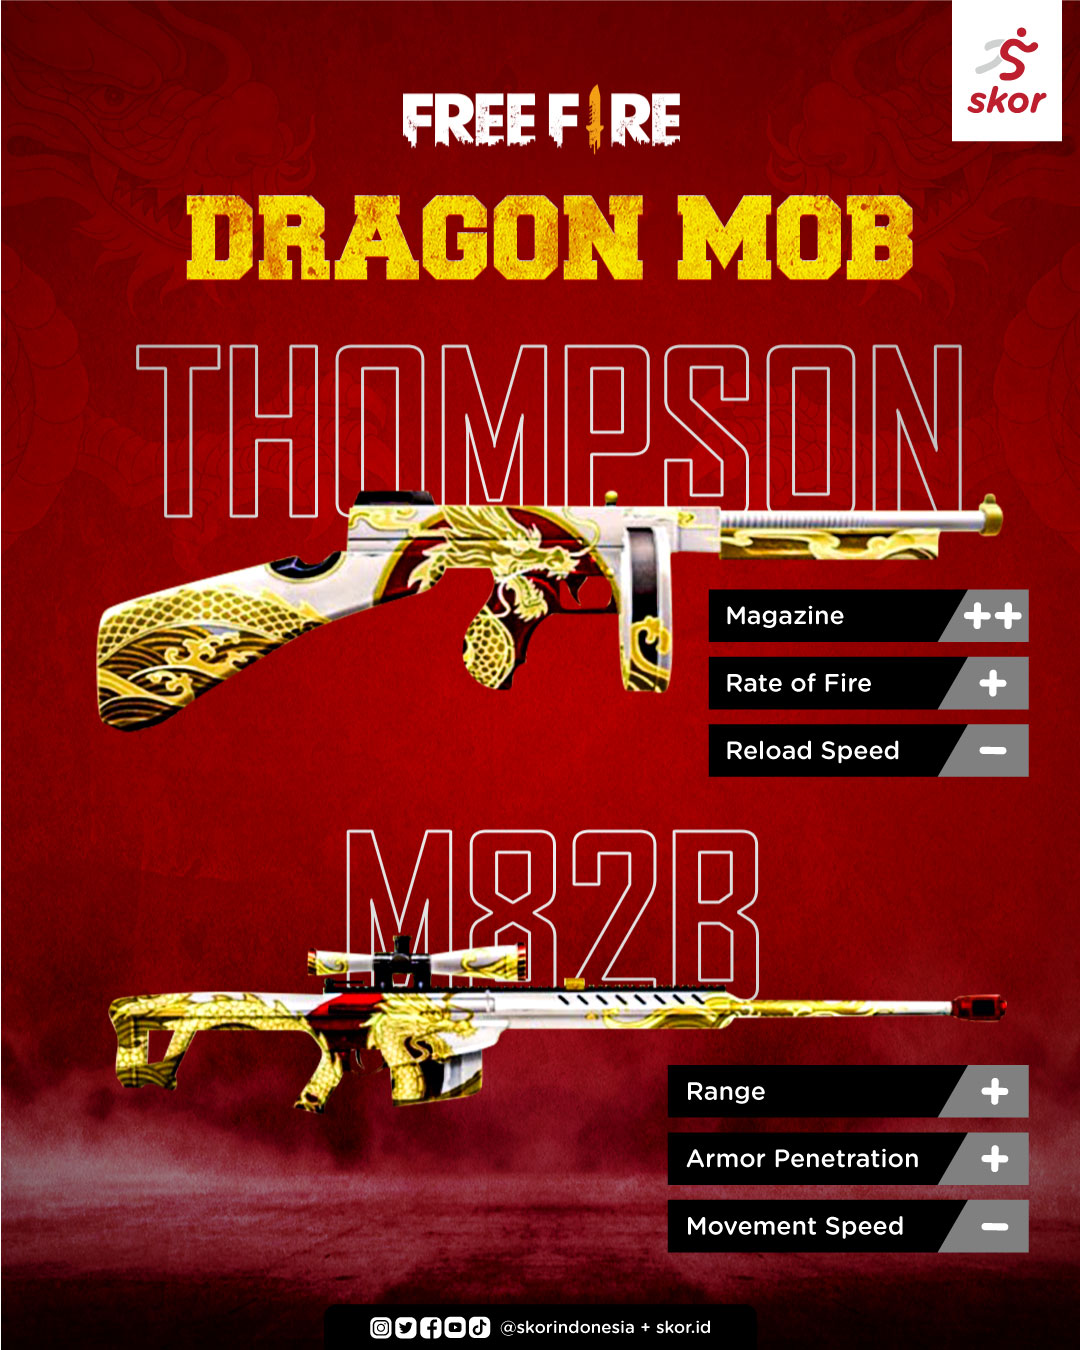 Keuntungan Menggunakan M82B Dragon Mob di Free Fire